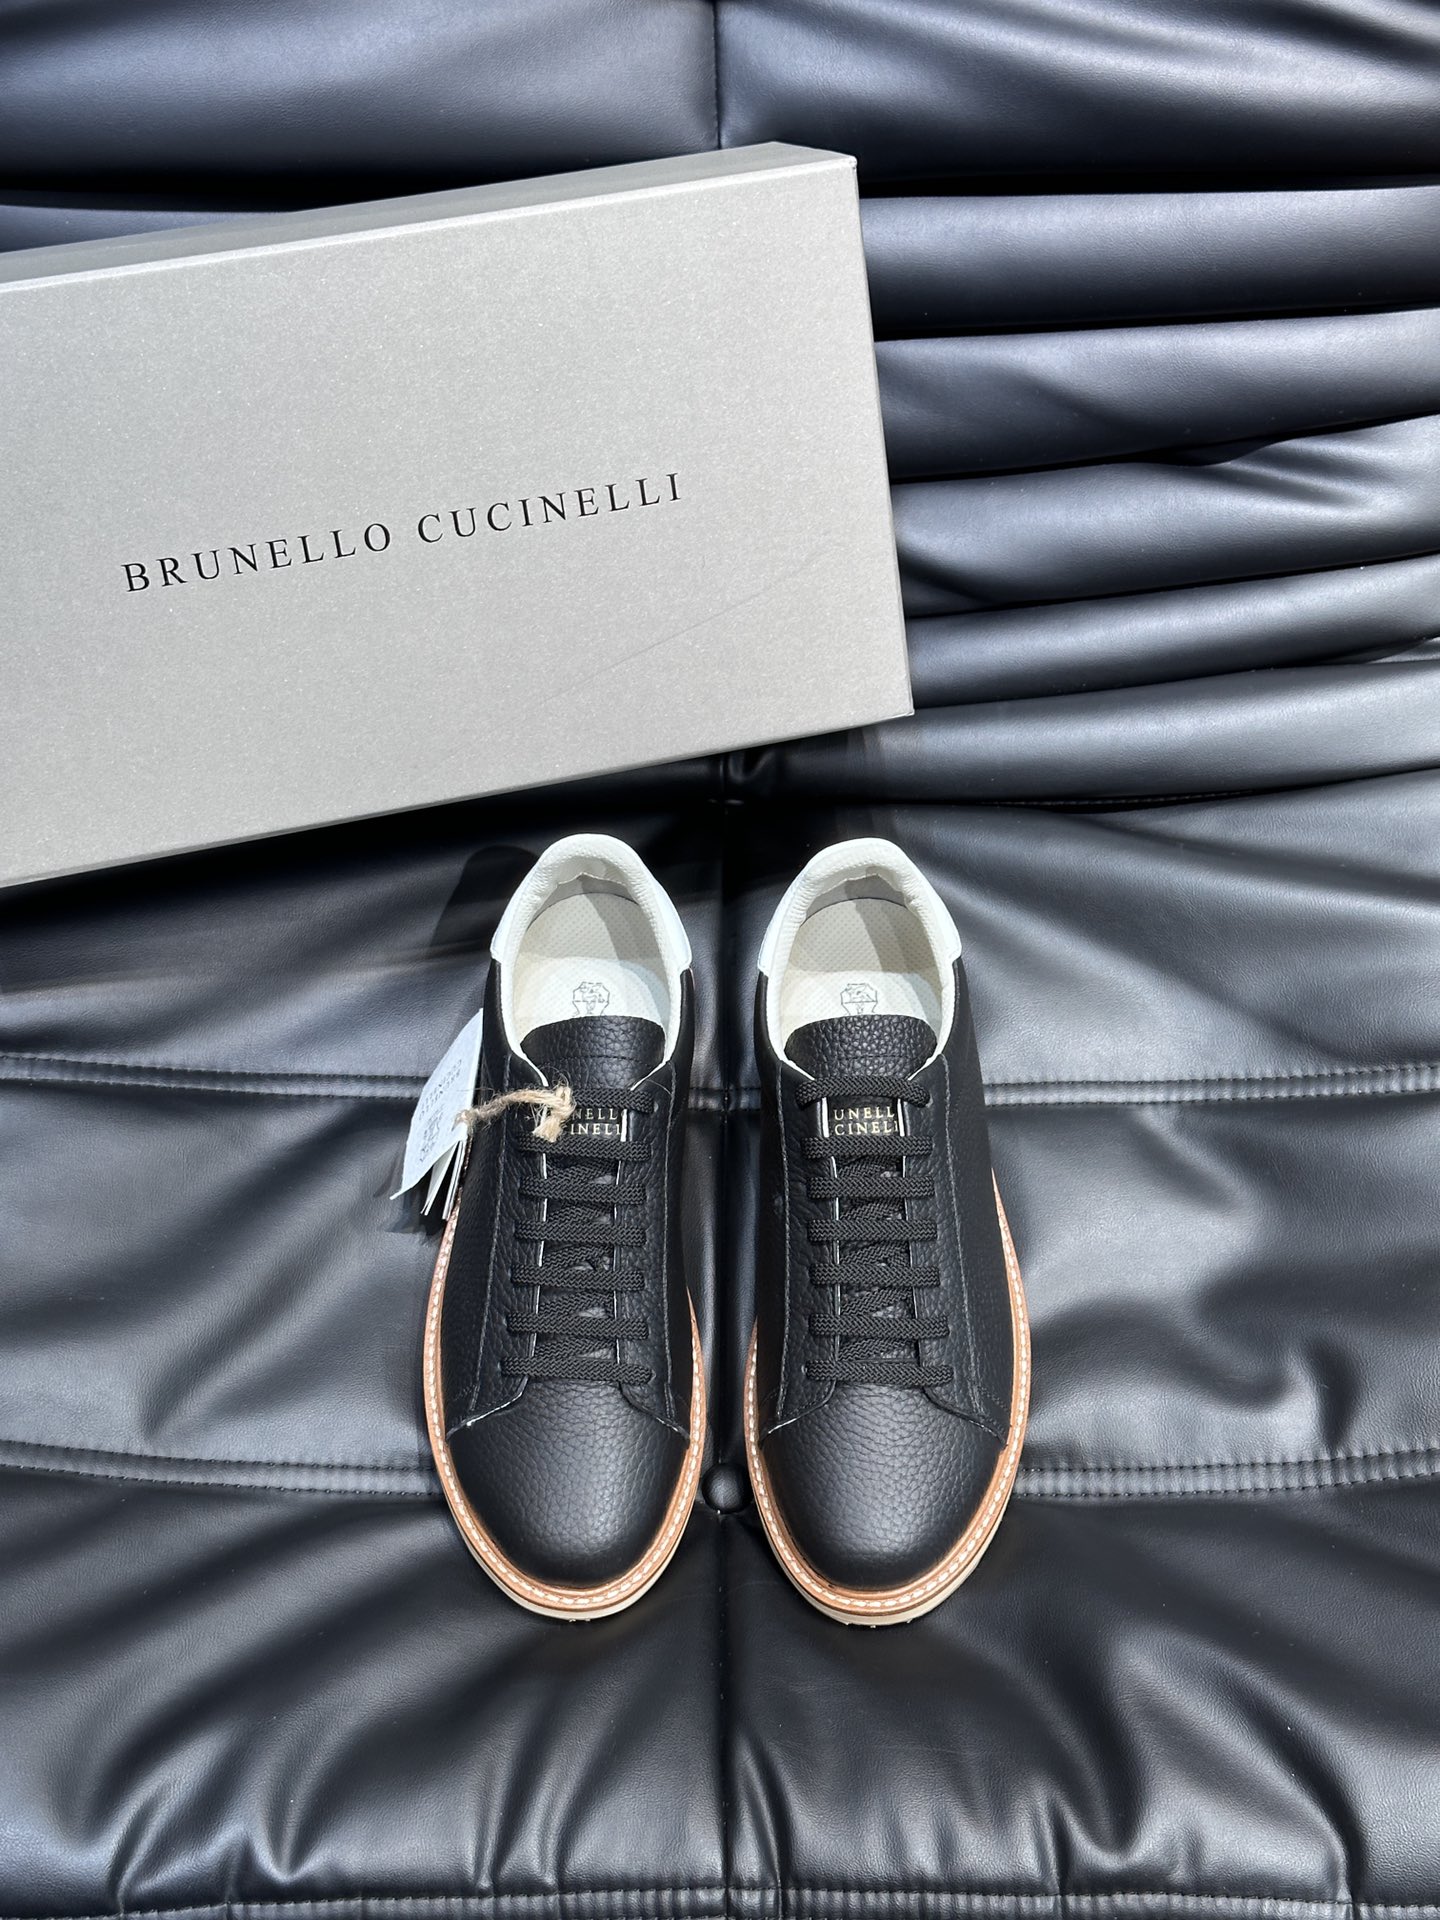 BrunelloCucinelli老钱风意大利顶奢休闲男鞋面料采用意大利进口压摔牛皮立体感和亲肤感十足！